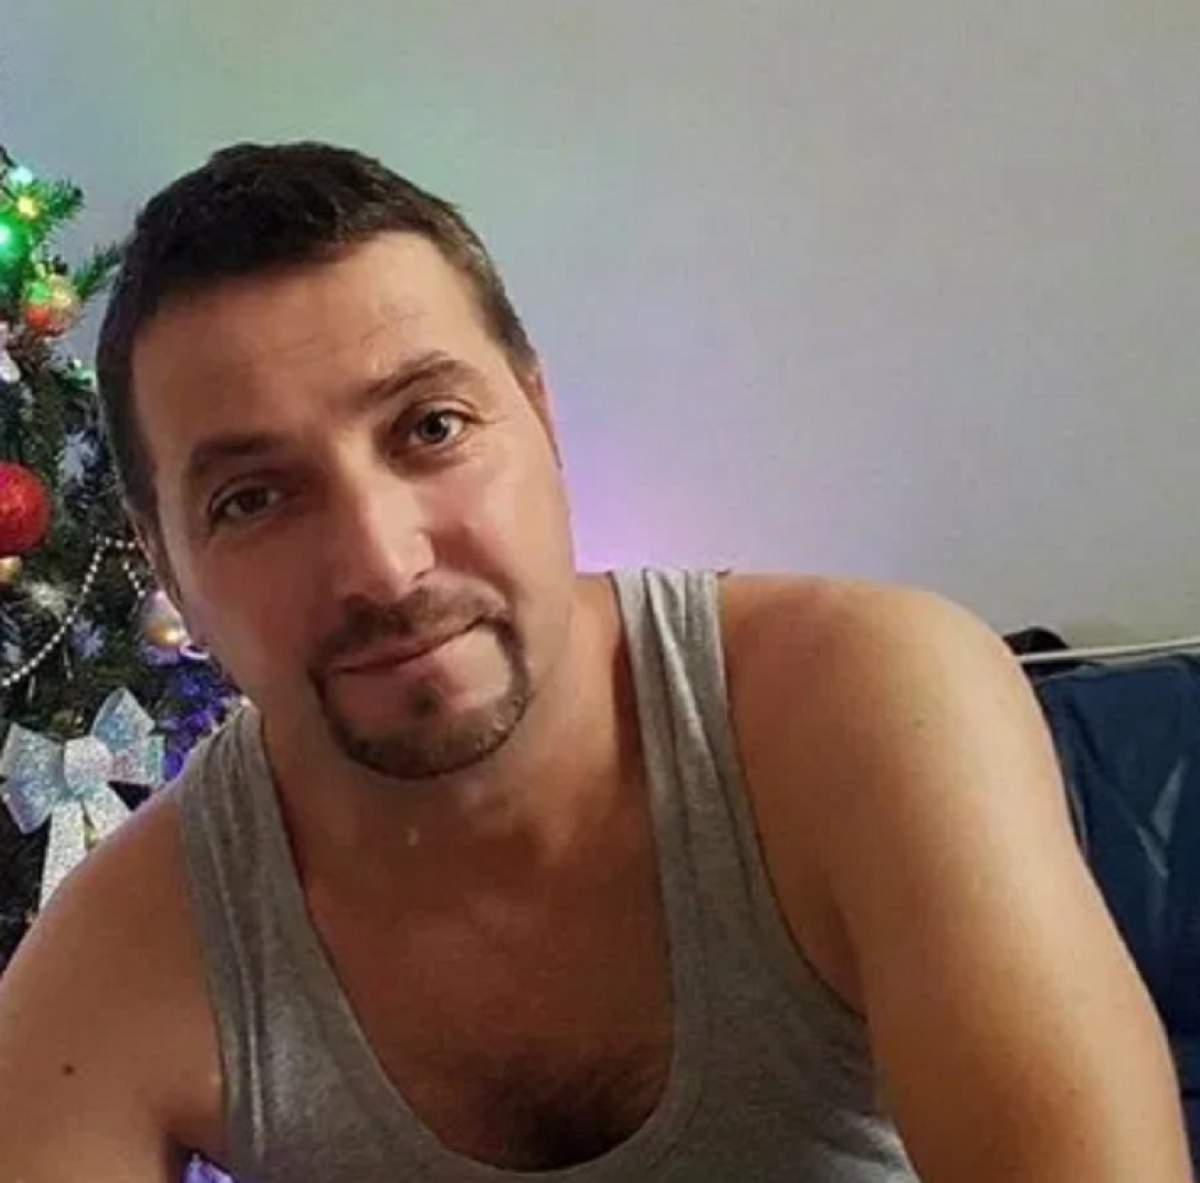 Bărbat de 45 de ani din Vaslui, dispărut fără urmă! Familia lui e speriată: "E de neînțeles"